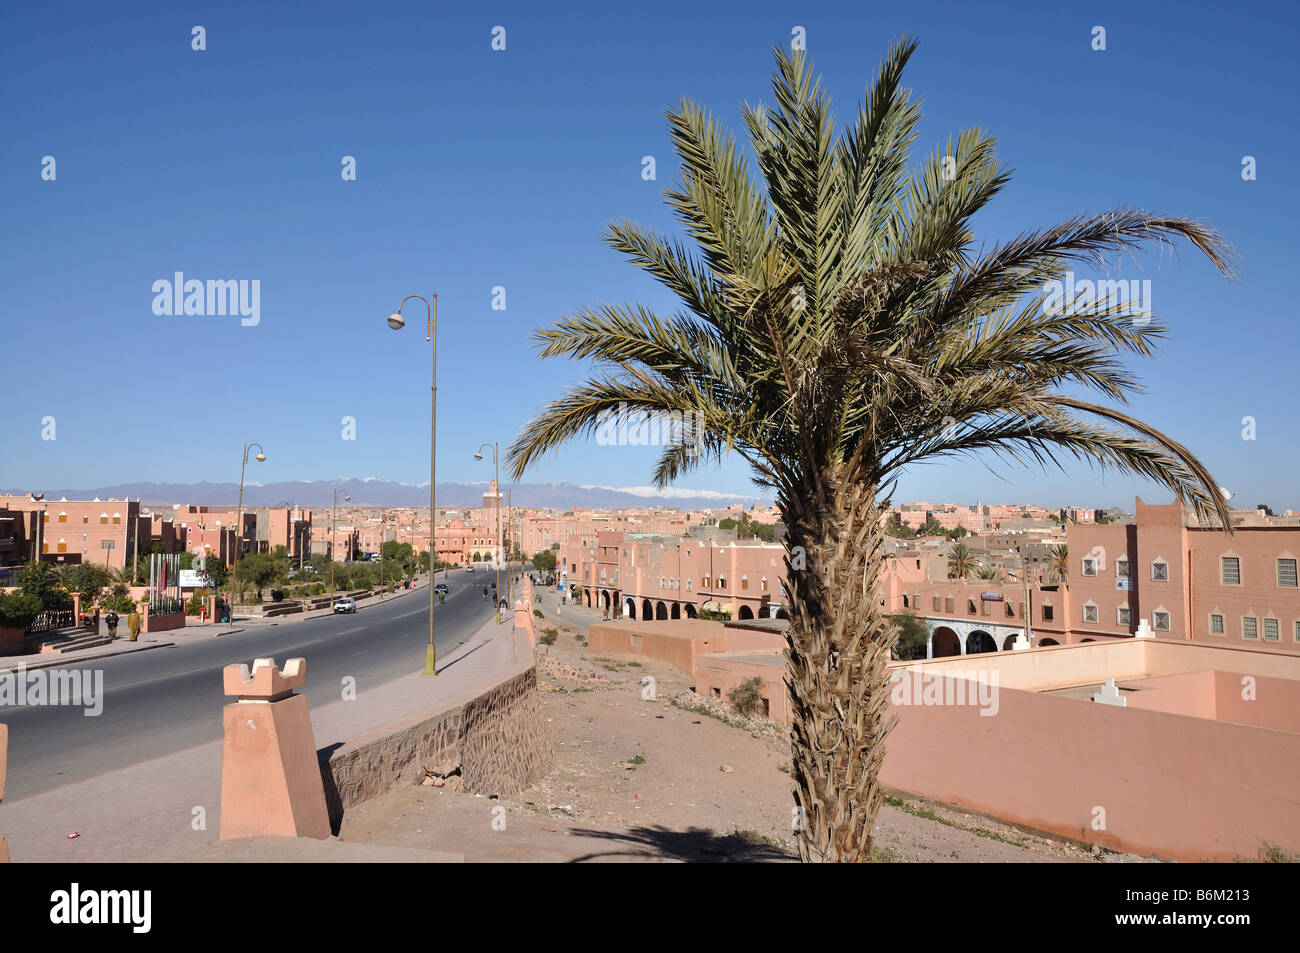 Rue de la ville de Ouarzazate, Maroc Banque D'Images